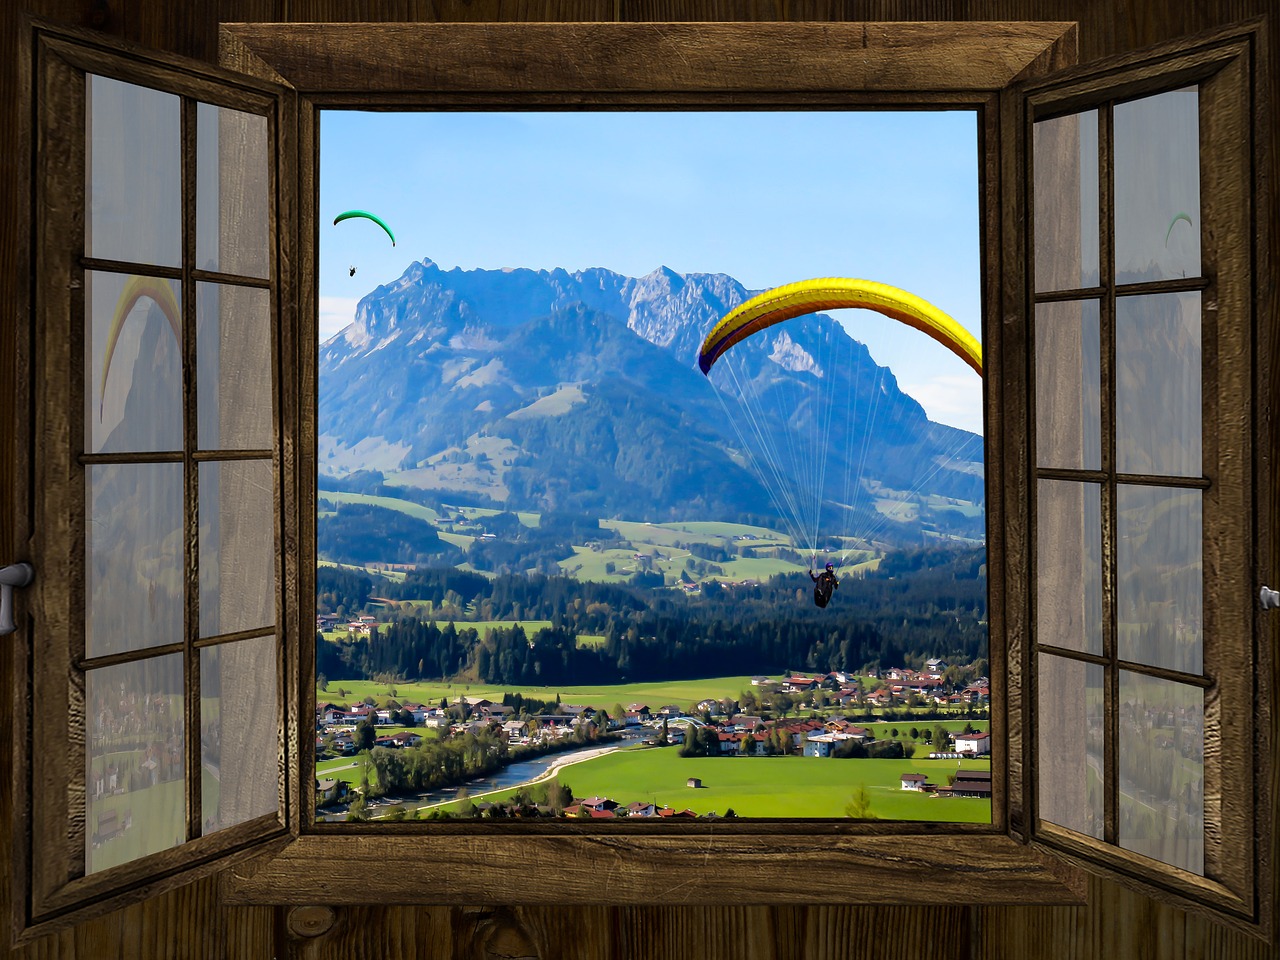 Image - window outlook mountains